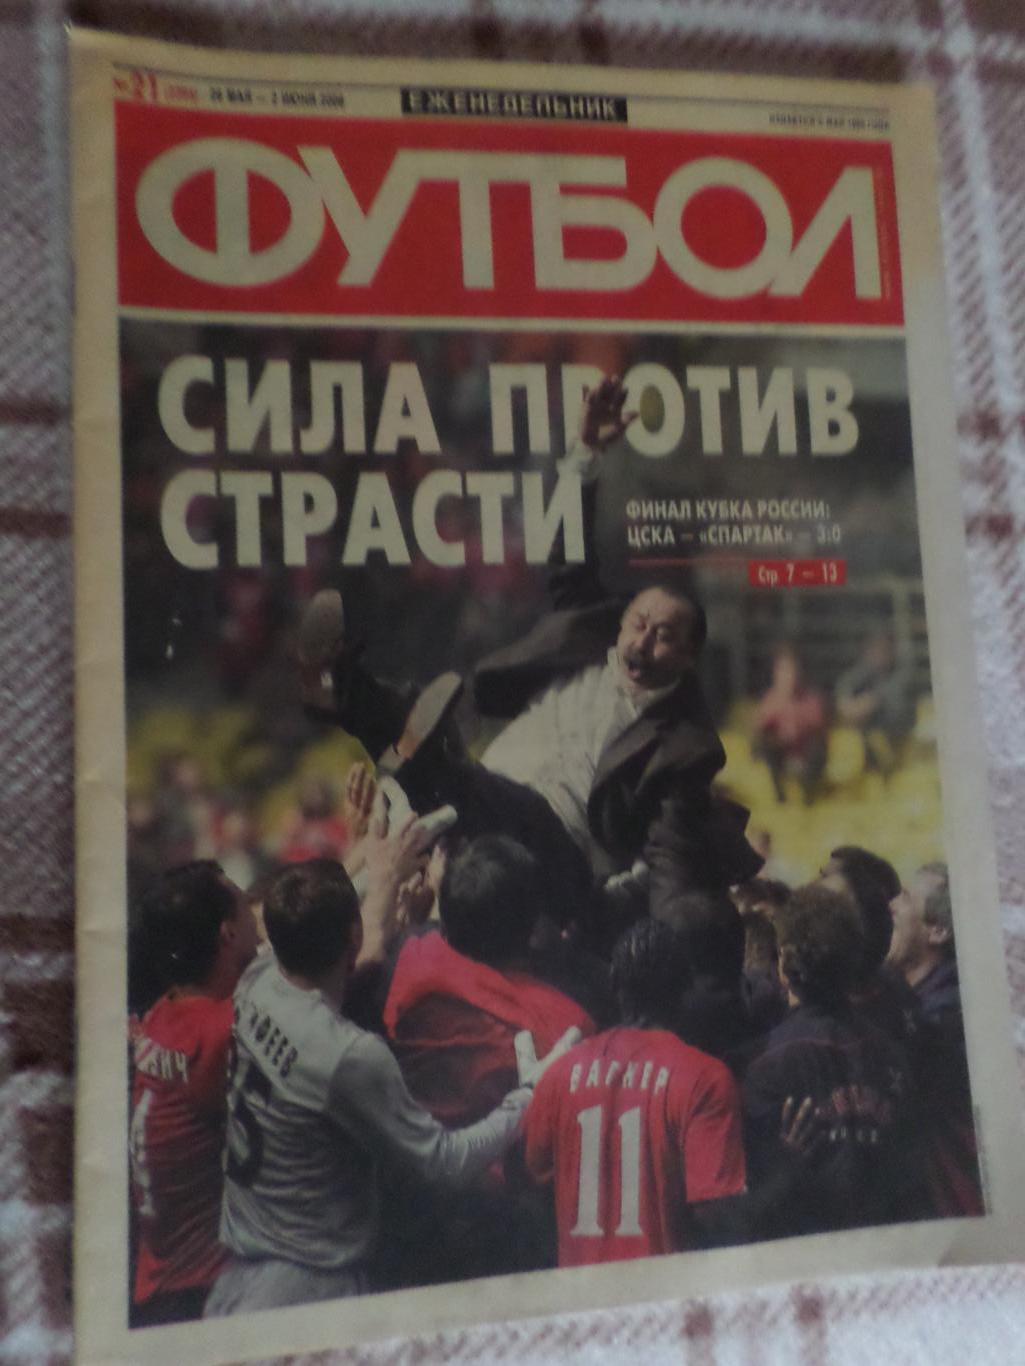 Еженедельник Футбол ( Москва) номер 21, 2006 г